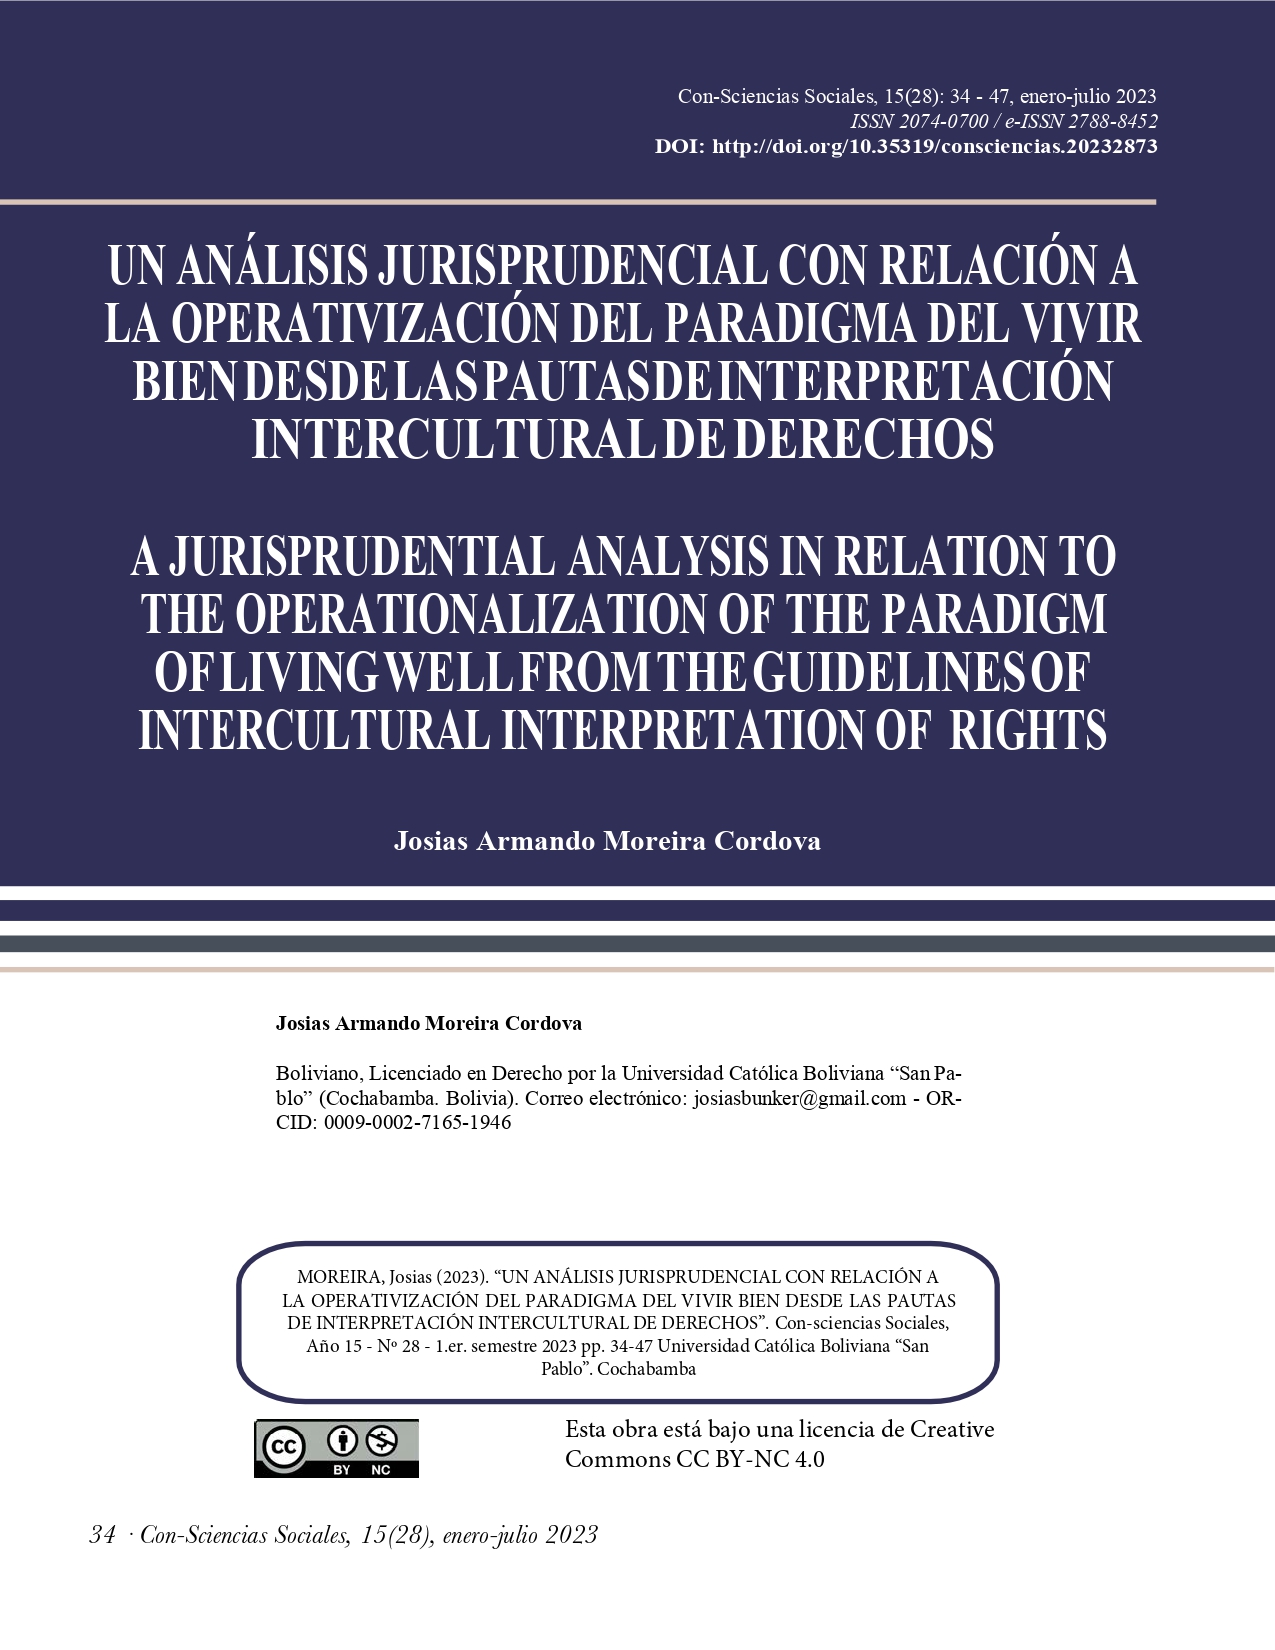 Un análisis jurisprudencial con relación a la operativización del paradigma del vivir bien desde las pautas de interpretación intercultural de derechos